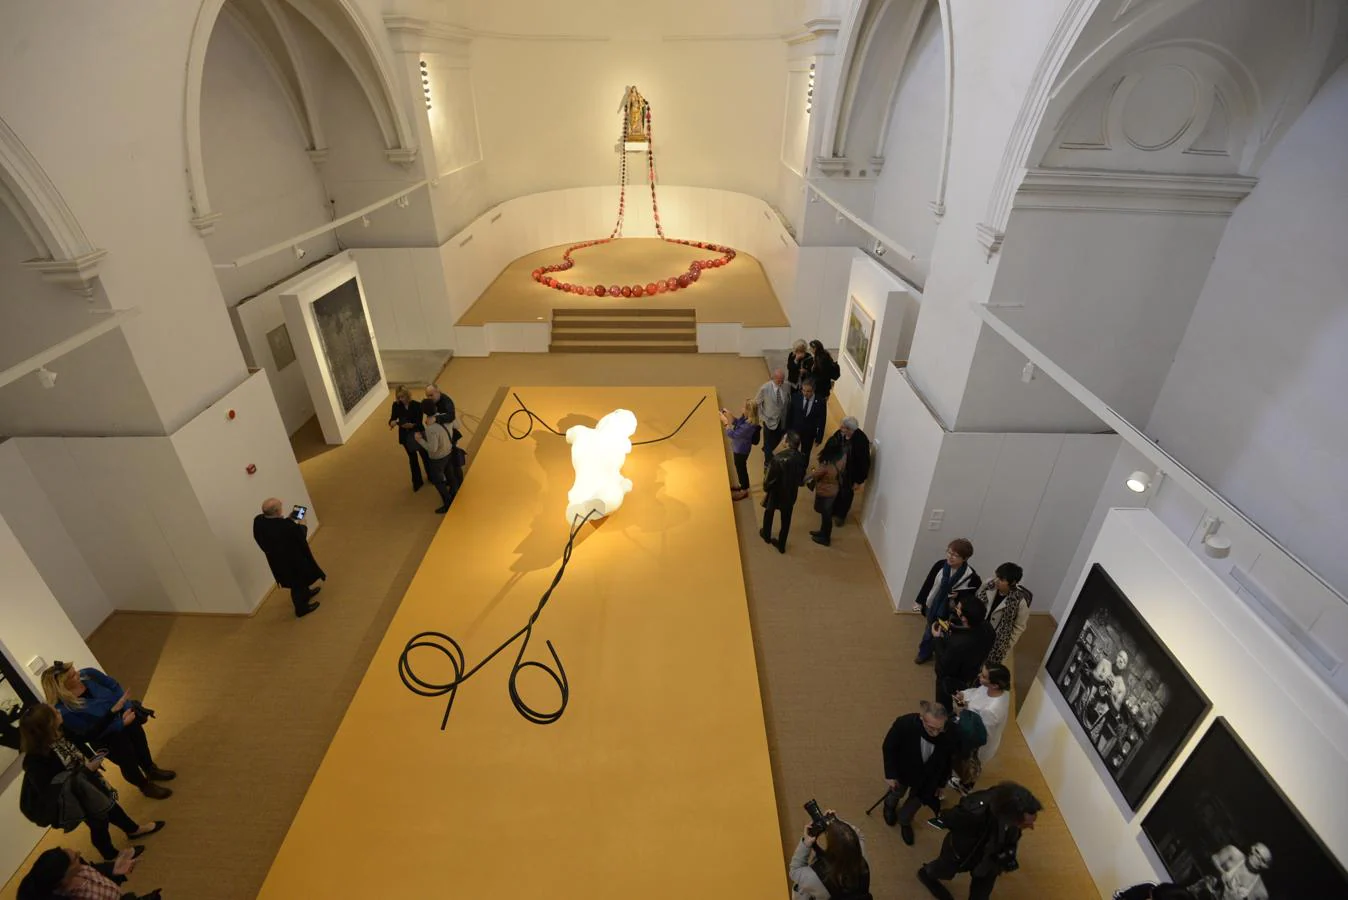 El convento de Santa Fe de Toledo expone la colección de arte moderno y contemporáneo de Roberto Polo